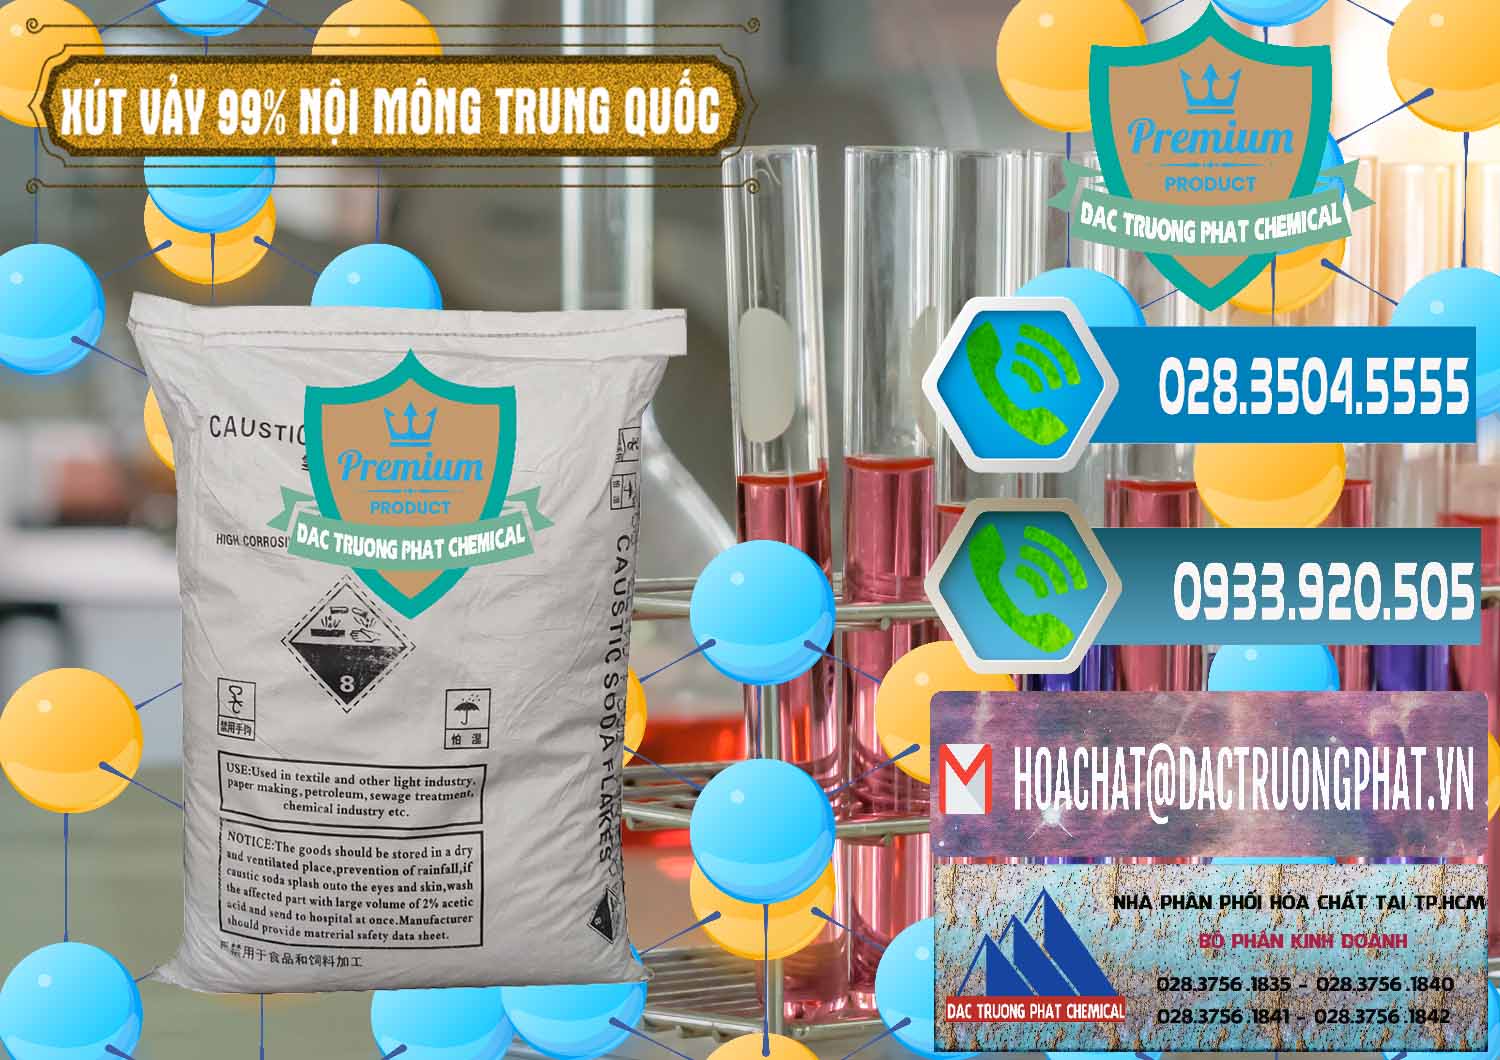 Nơi chuyên bán ( cung cấp ) Xút Vảy - NaOH Vảy 99% Nội Mông Trung Quốc China - 0228 - Đơn vị chuyên kinh doanh - phân phối hóa chất tại TP.HCM - congtyhoachat.net